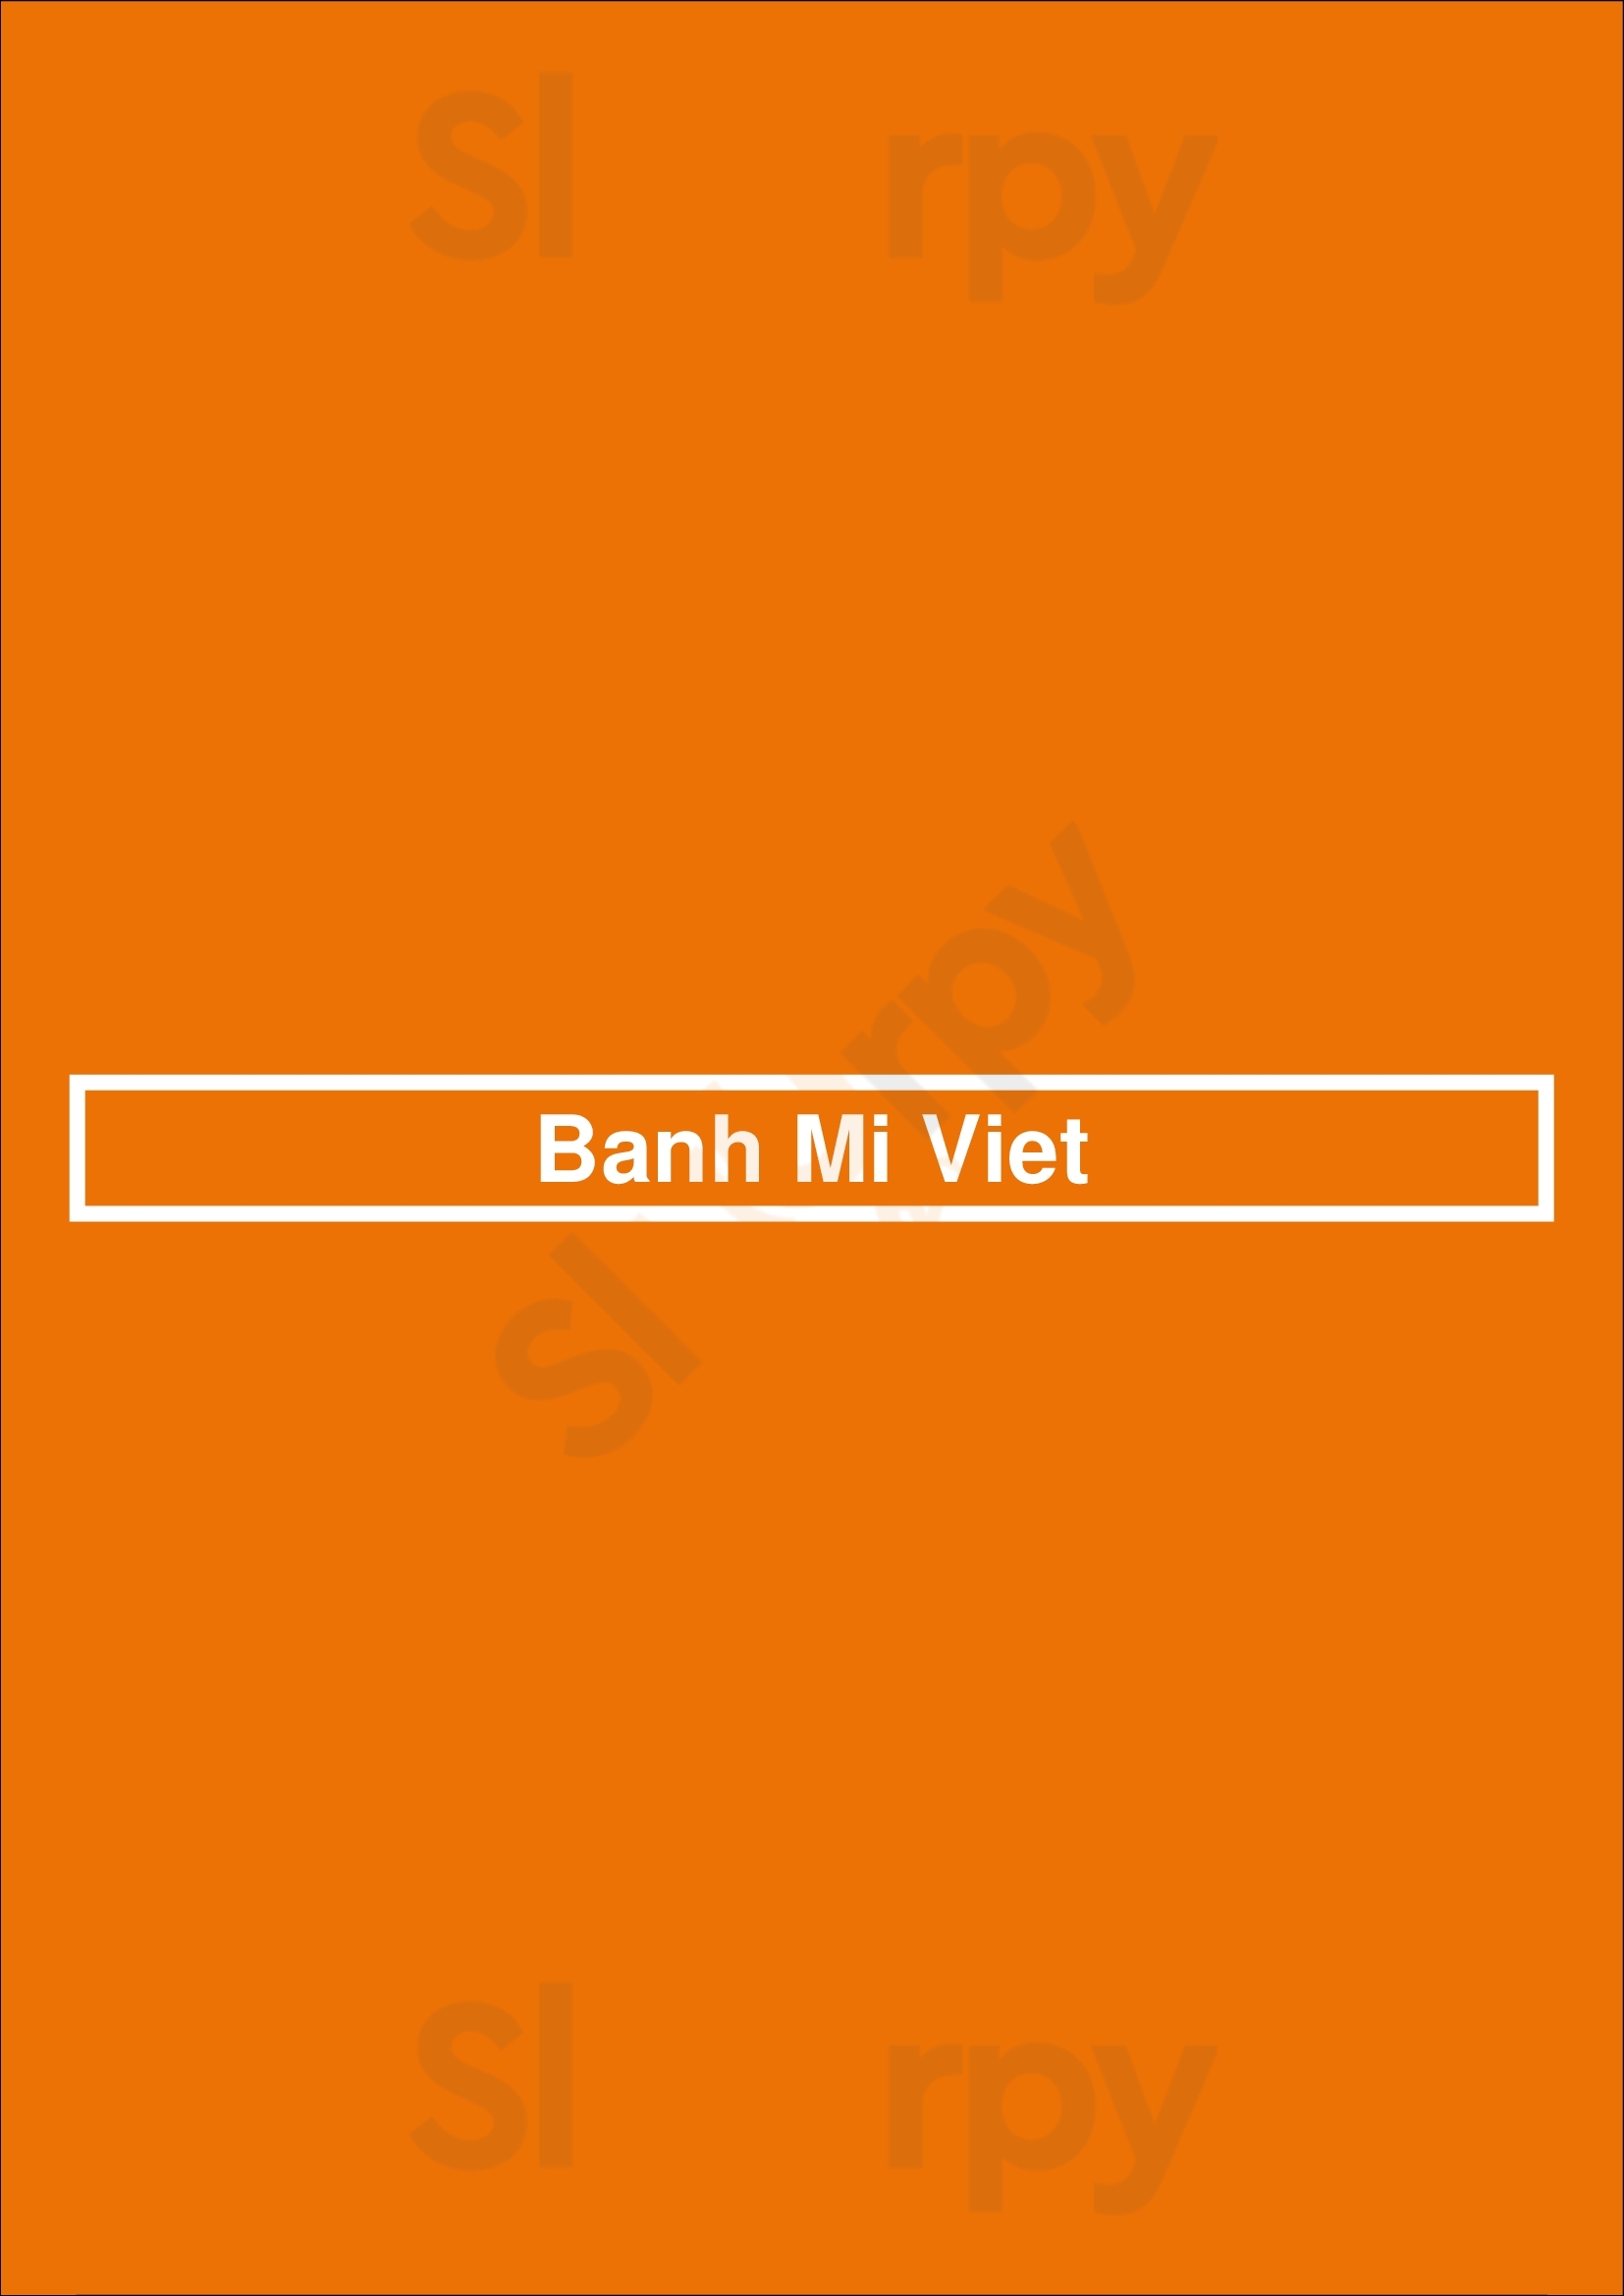 Banh Mi Viet Fort Worth Menu - 1